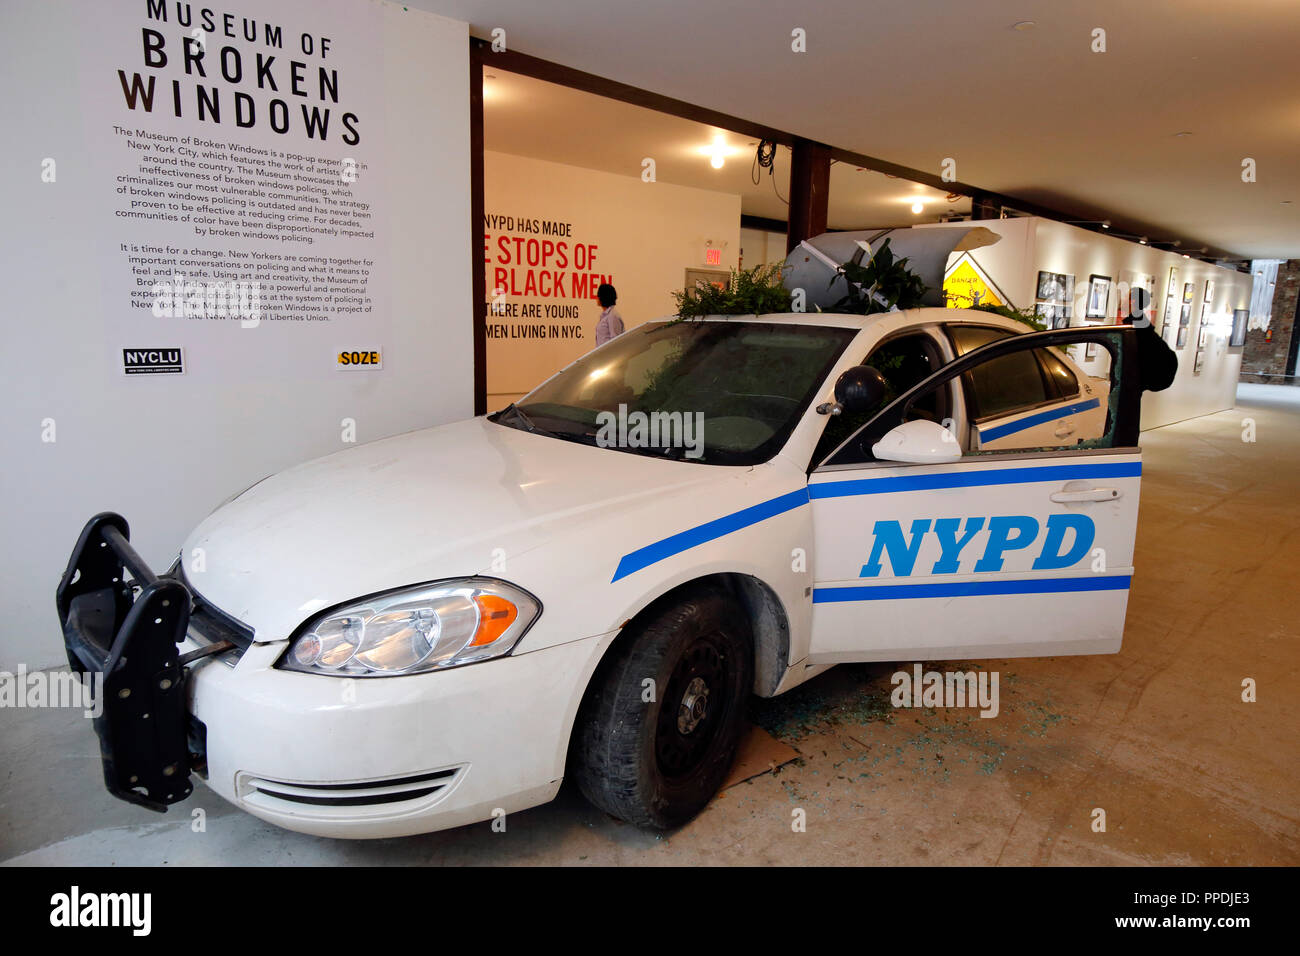 Une exposition d'art politique doté d'une voiture de police repensé comme un jardin, au Musée de fenêtres brisées par la NYCLU Banque D'Images